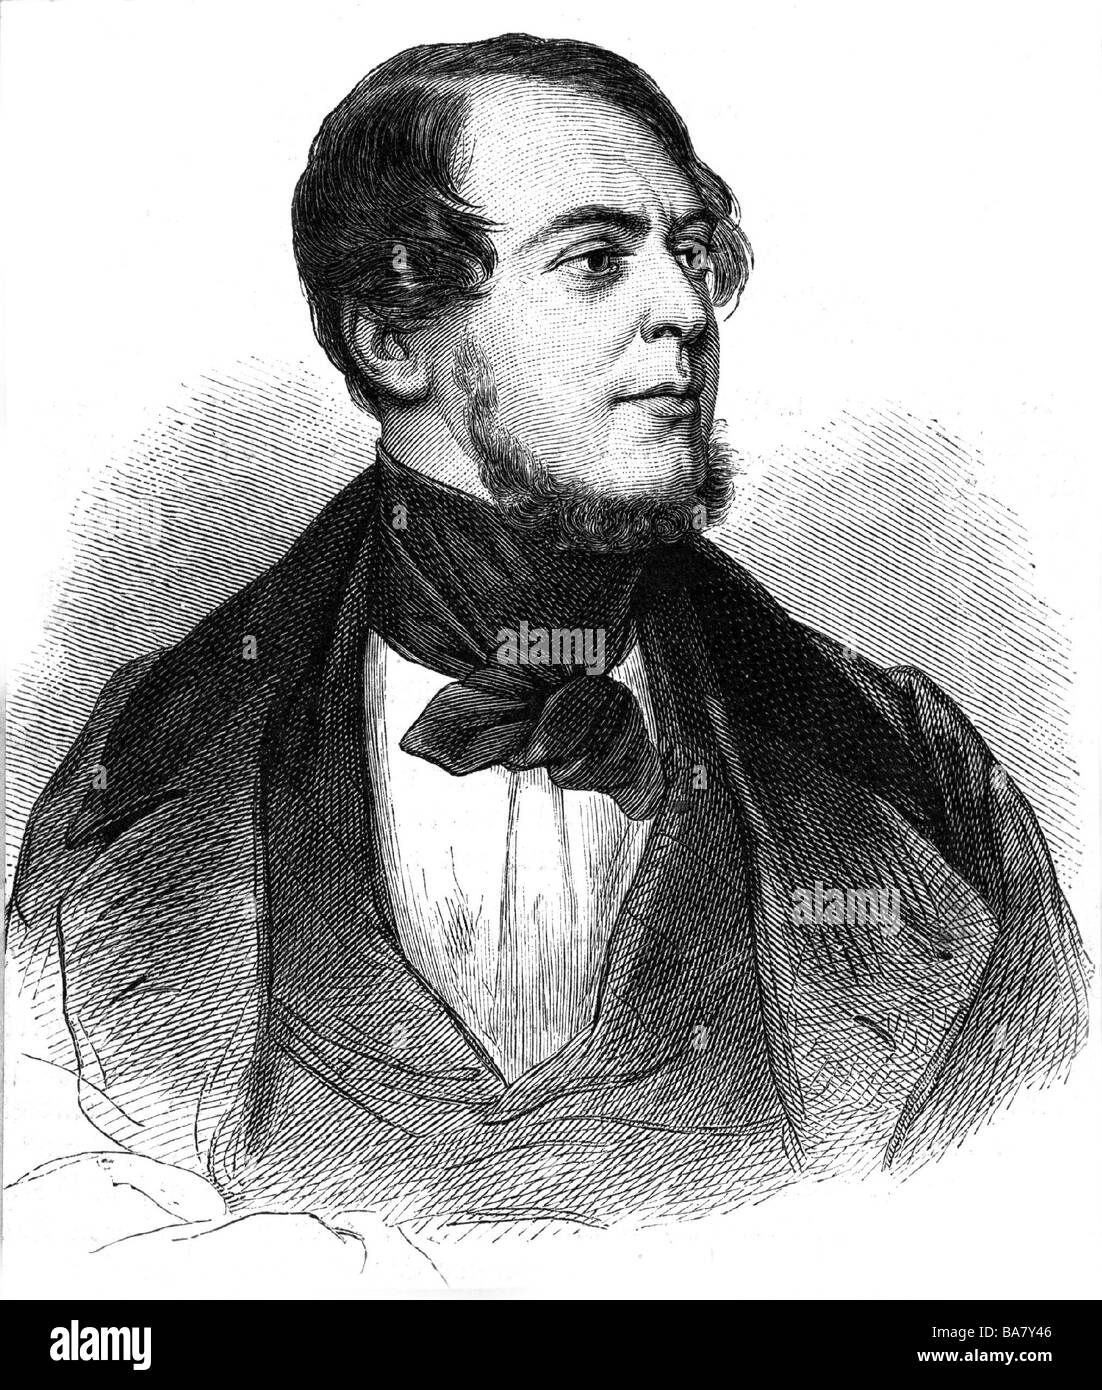 Halm, Friedrich, 2.4.1806 - 22.5.1871, autore/scrittore austriaco (drammaturgo e romanziere), ritratto, incisione in legno di Danhauer, 19th secolo, Foto Stock